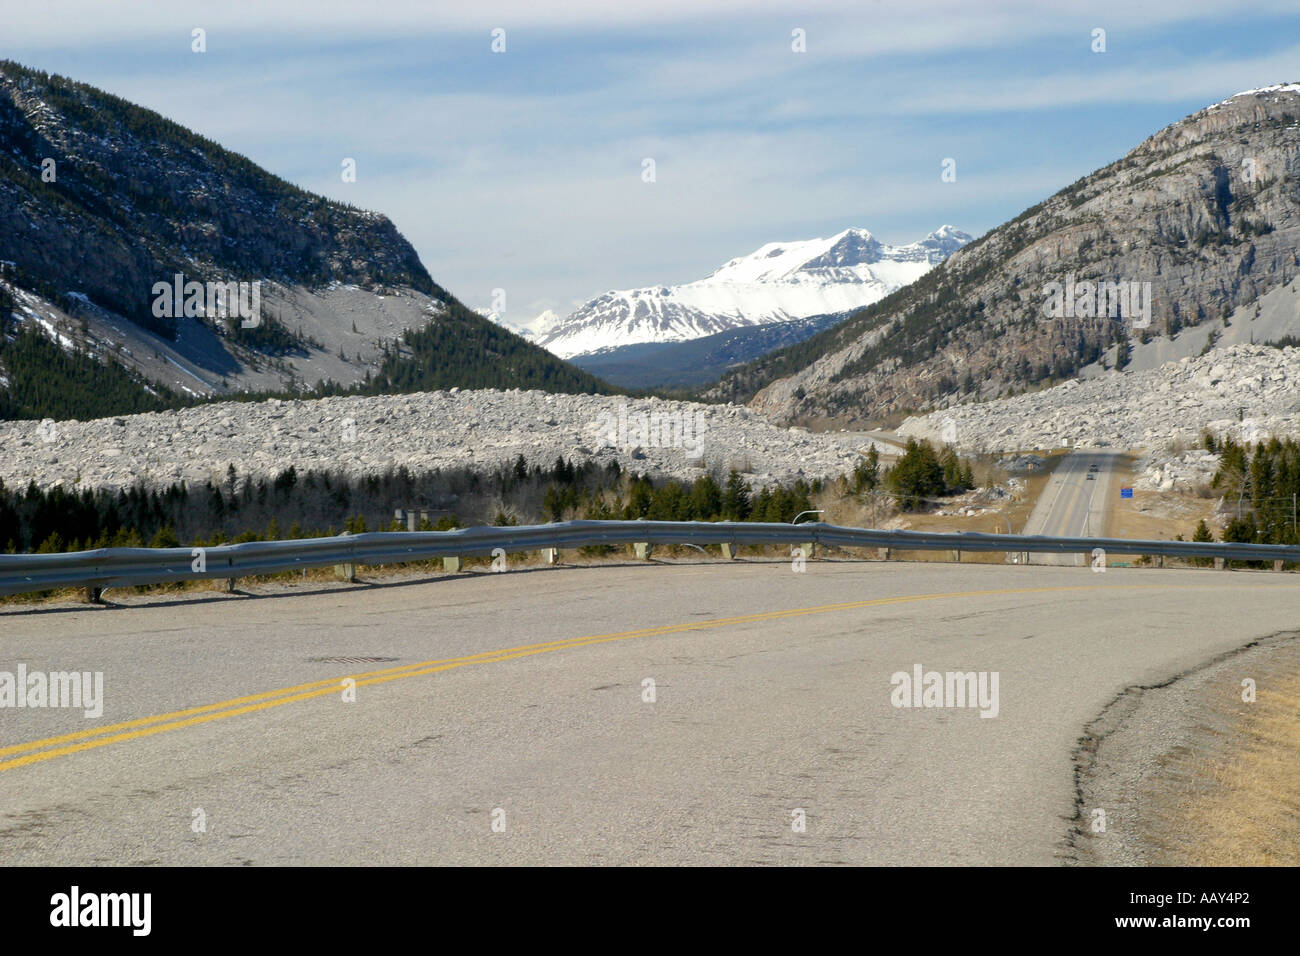 Diapositiva di roccia, Crowsnest Pass, Frank diapositiva, Turtle Mountain, Alberta, Canada, America del Nord. Foto Stock